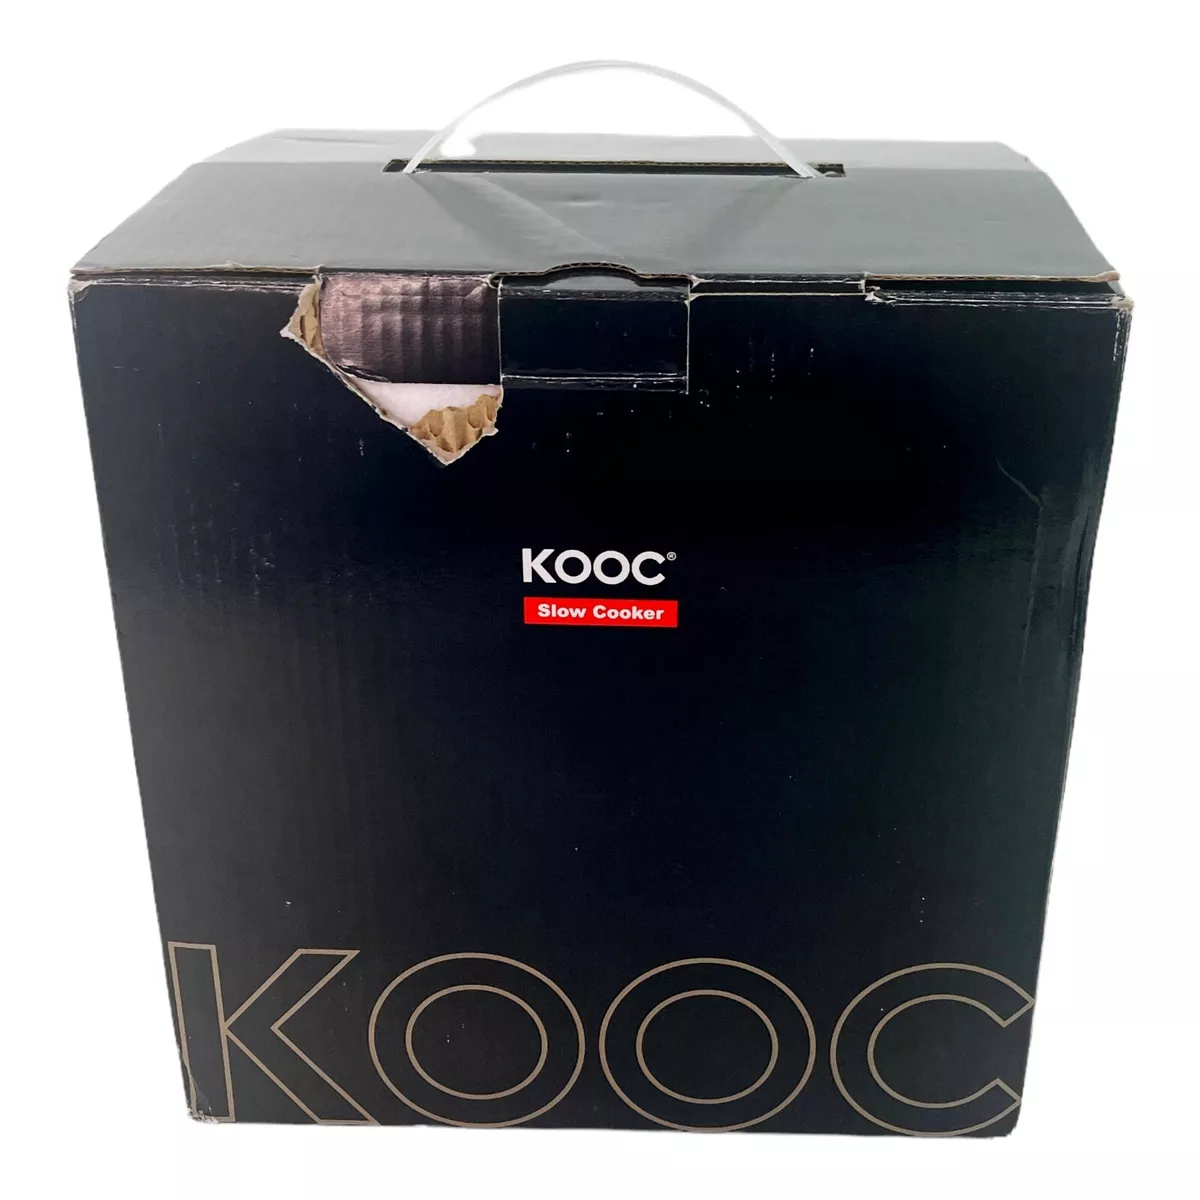 KooC RNAB089CTPJ22 kooc small slow cooker, 2-quart, free liners